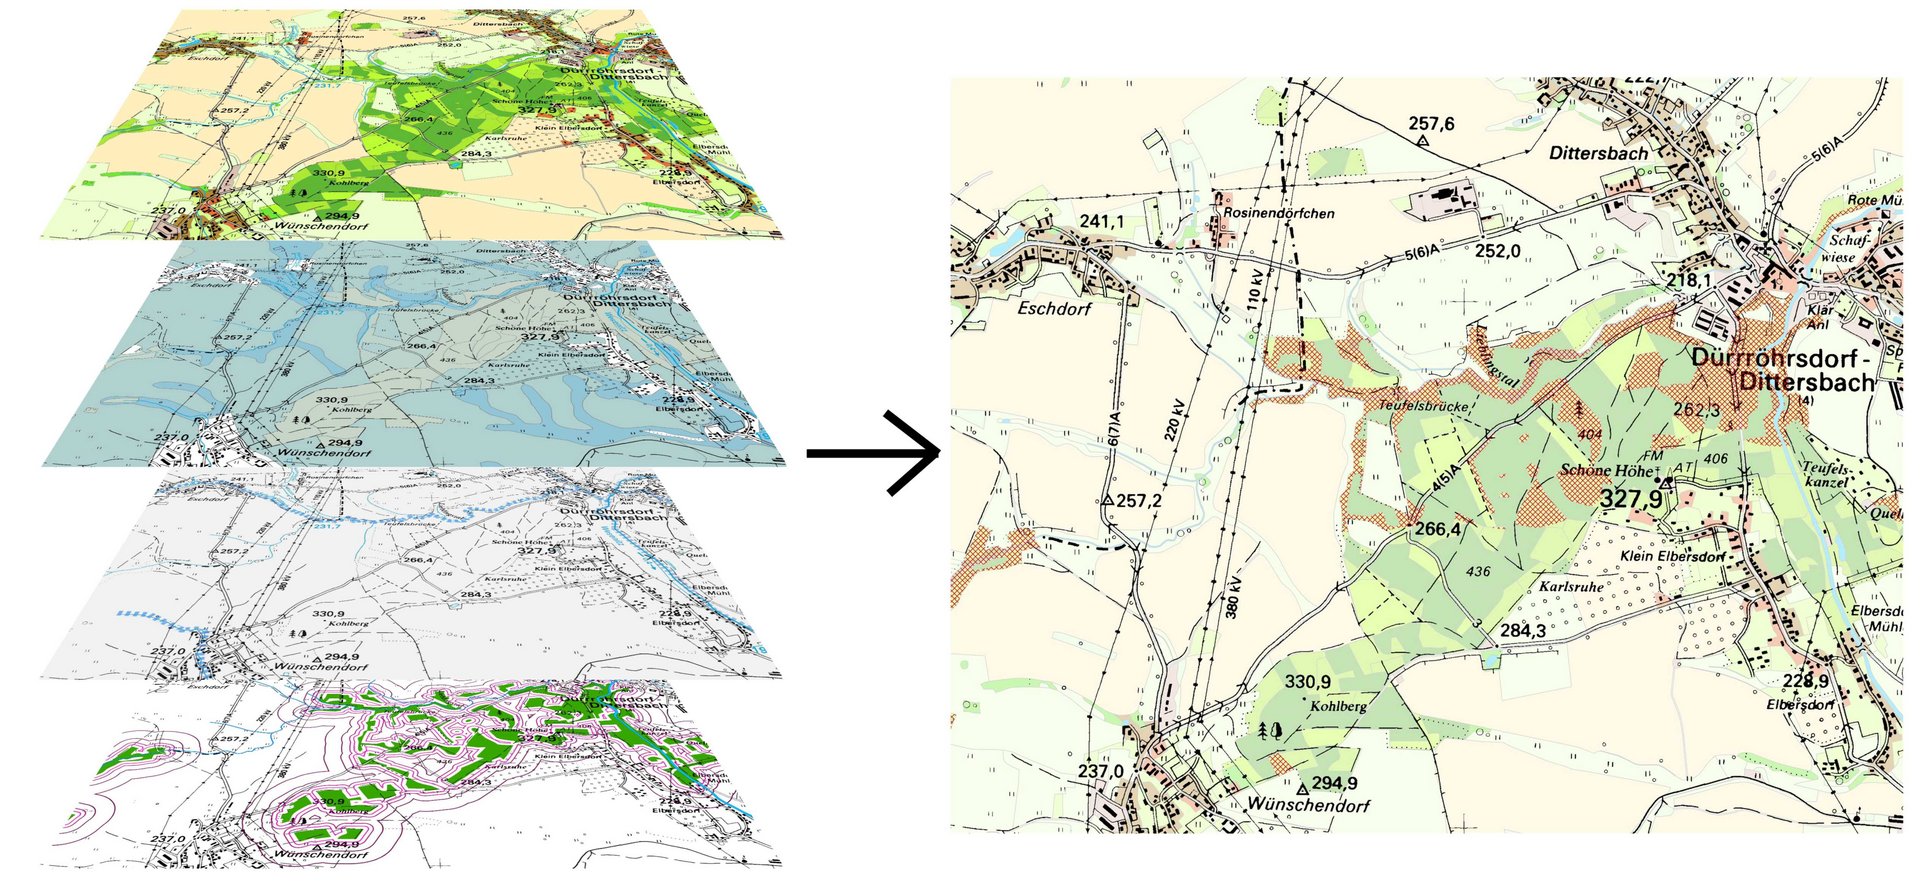 Modellierung der potenziellen Habitate des Feuersalamanders (Salamandra salamandra) westlich von Dürrröhrsdorf-Dittersbach